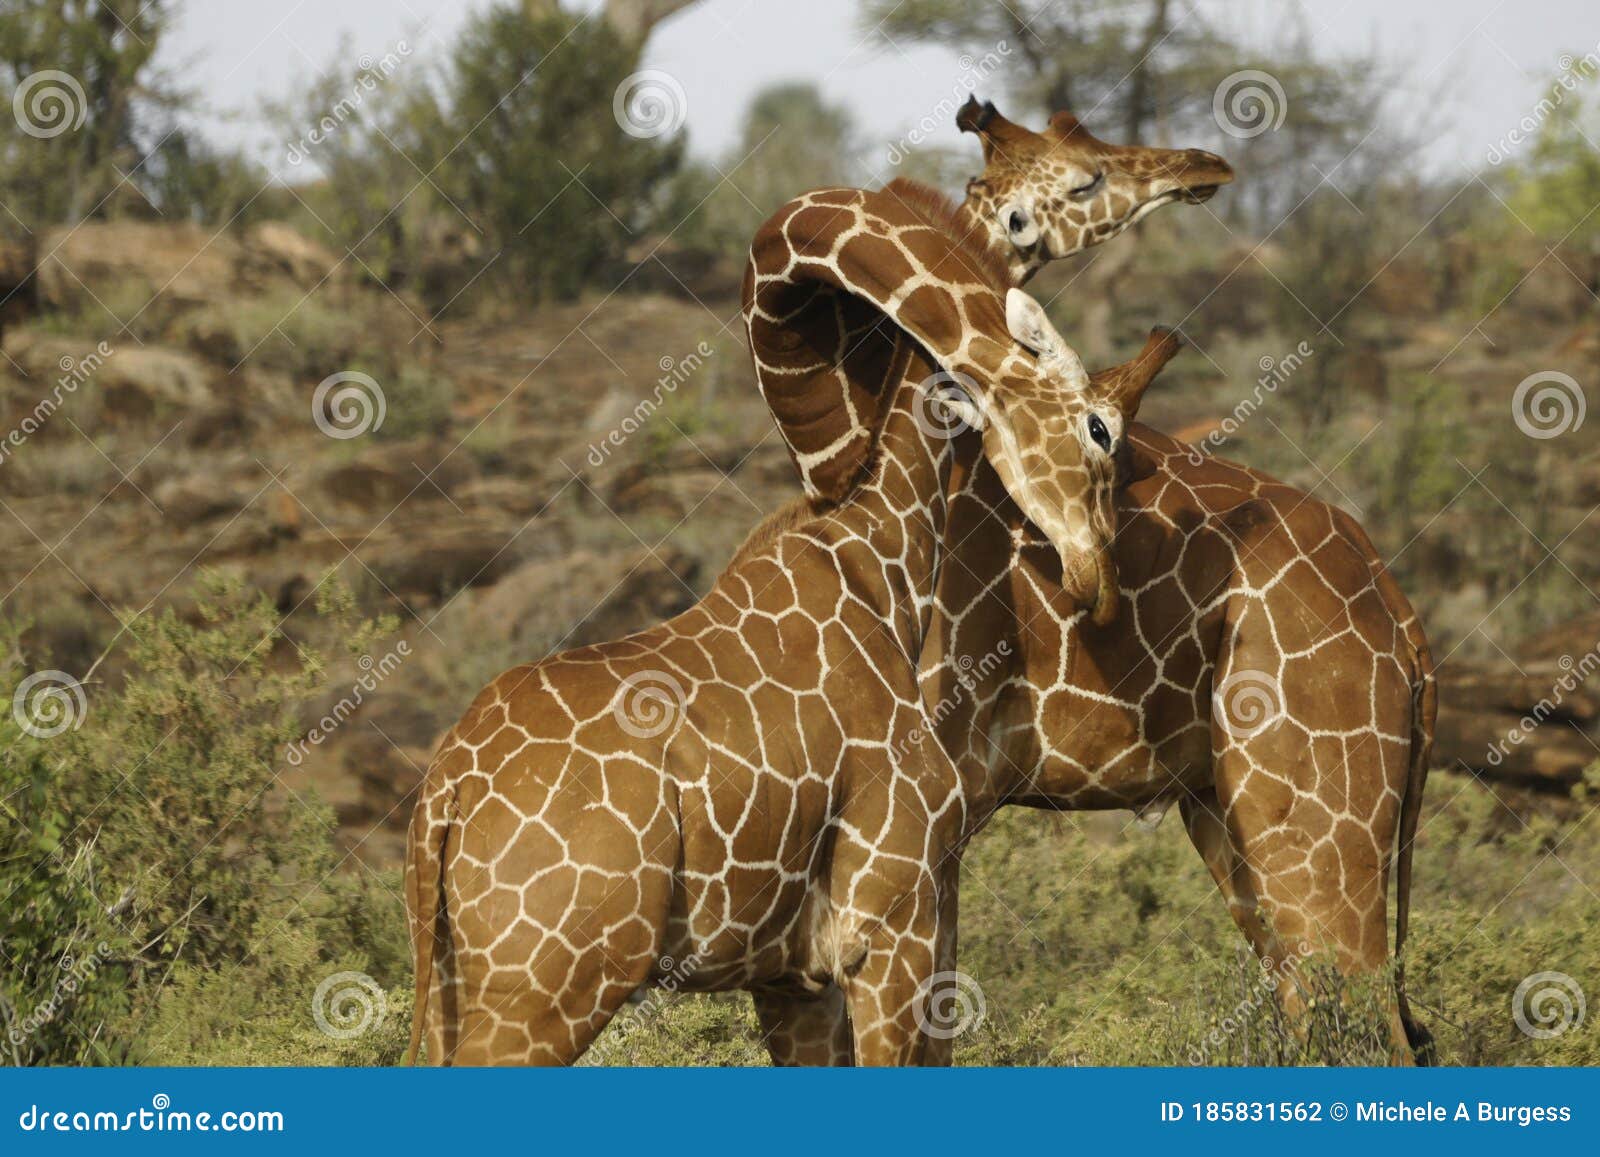 reticulated giraffes necking, samburu, kenya